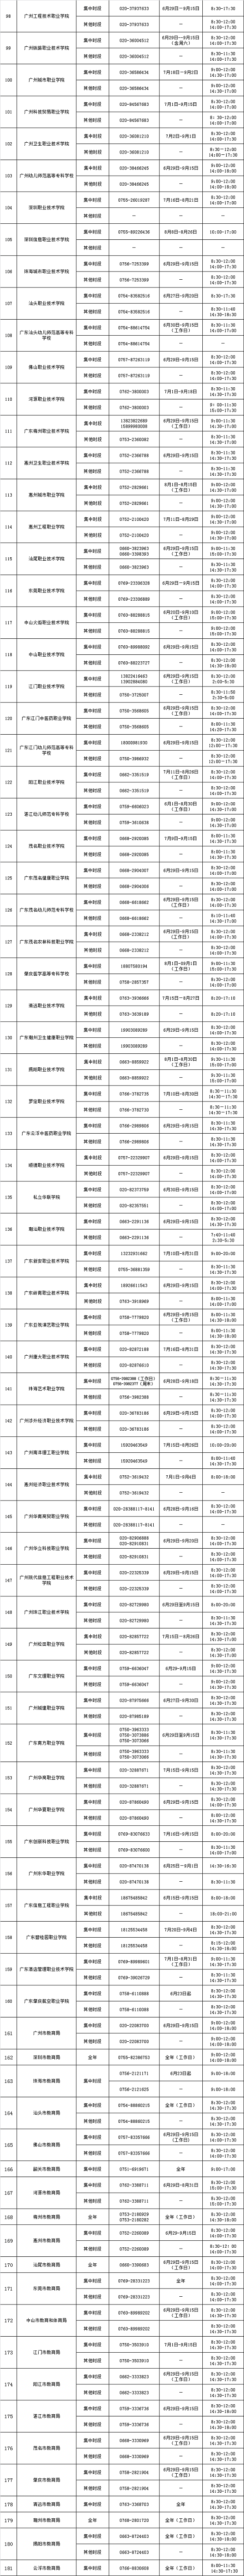 2022年广东省高校学生资助热线电话情况表